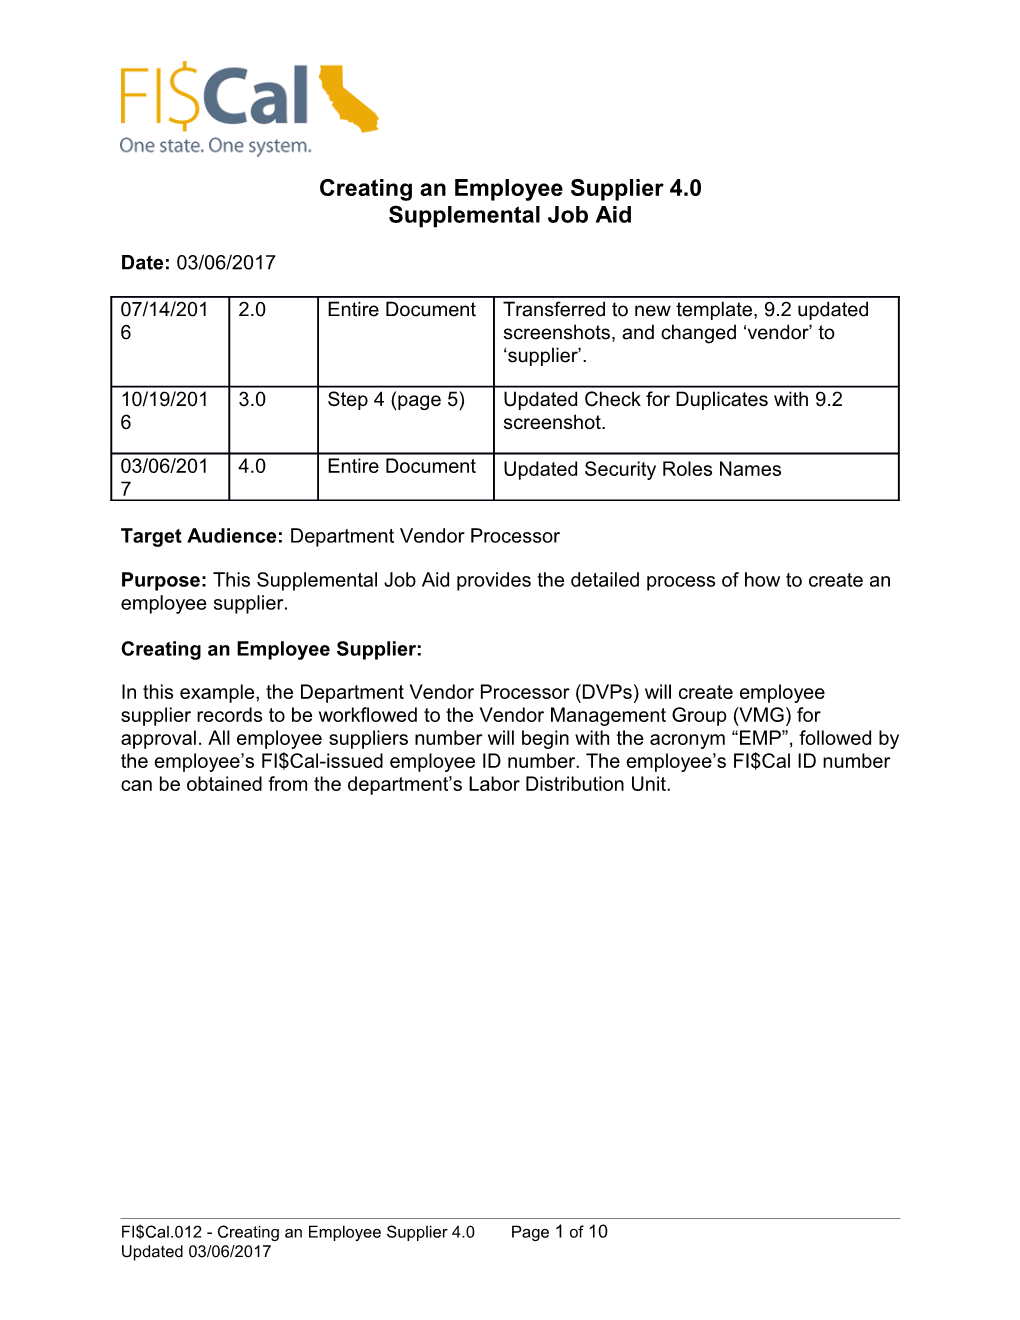 Creating an Employee Supplier4.0 Supplemental Job Aid